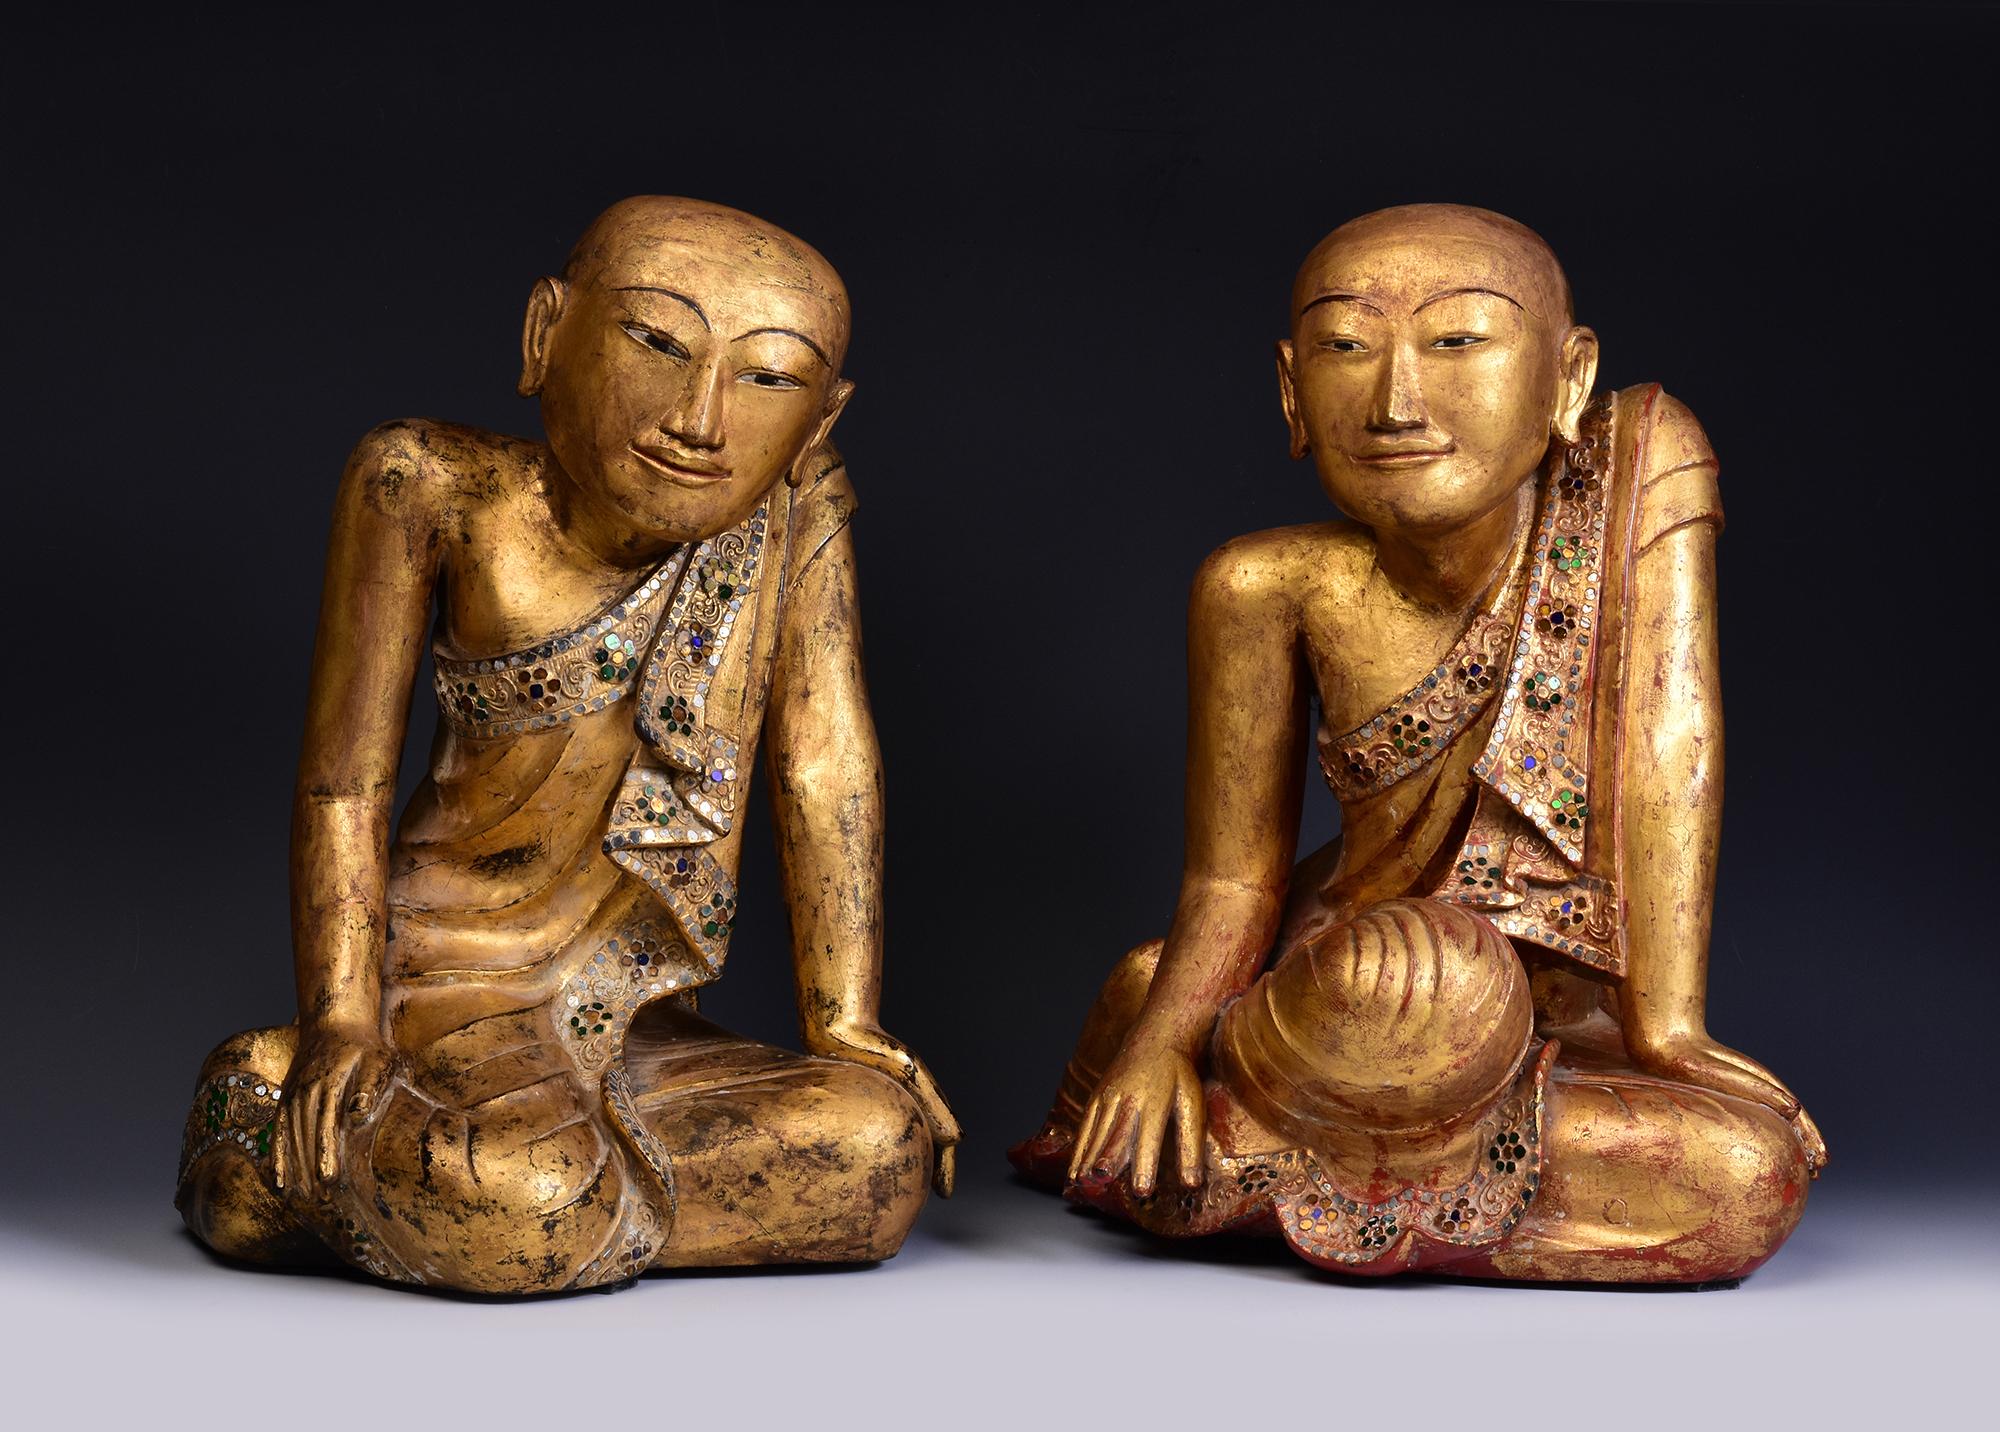 Ein Paar sehr seltener und prächtiger antiker burmesischer Lack-Sitzjünger mit Vergoldung und Glaseinlage.

Alter: Birma, frühe Mandalay-Periode, frühes 19.
Größe: Höhe 39 - 40 C.M. / Breite 29 - 31 C.M.
Zustand: Insgesamt guter Zustand (einige